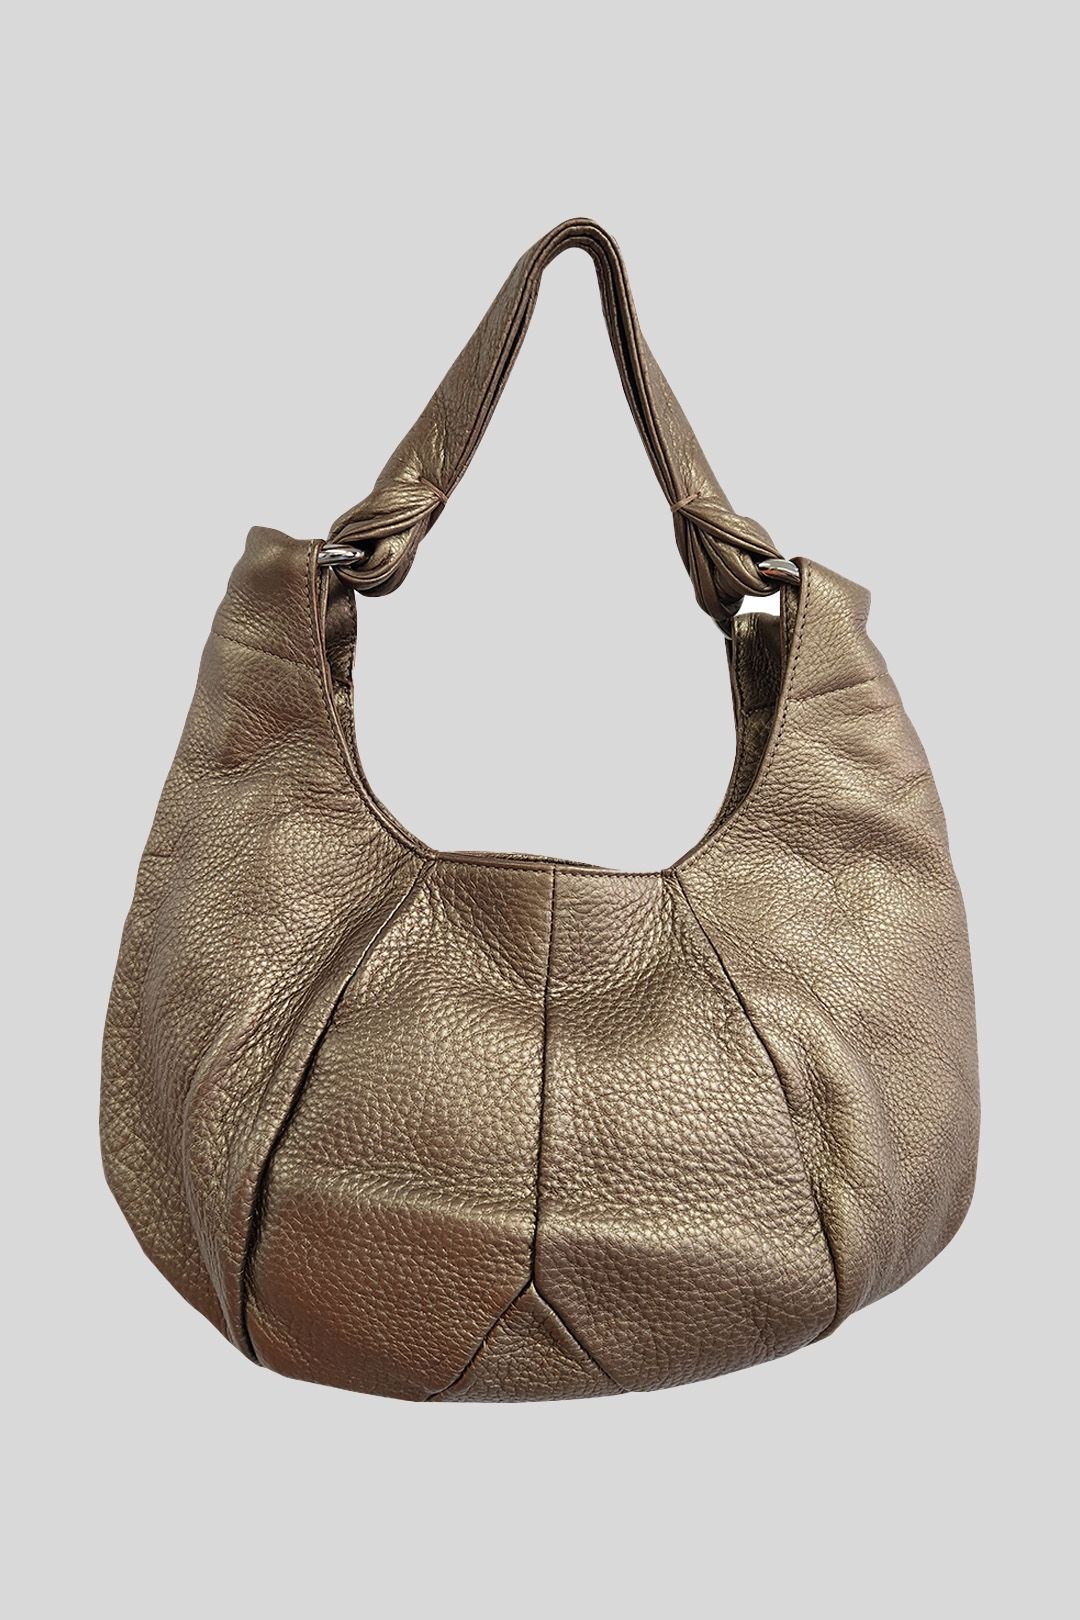 Furla - Bronze Leather Hobo Shoulder Bag